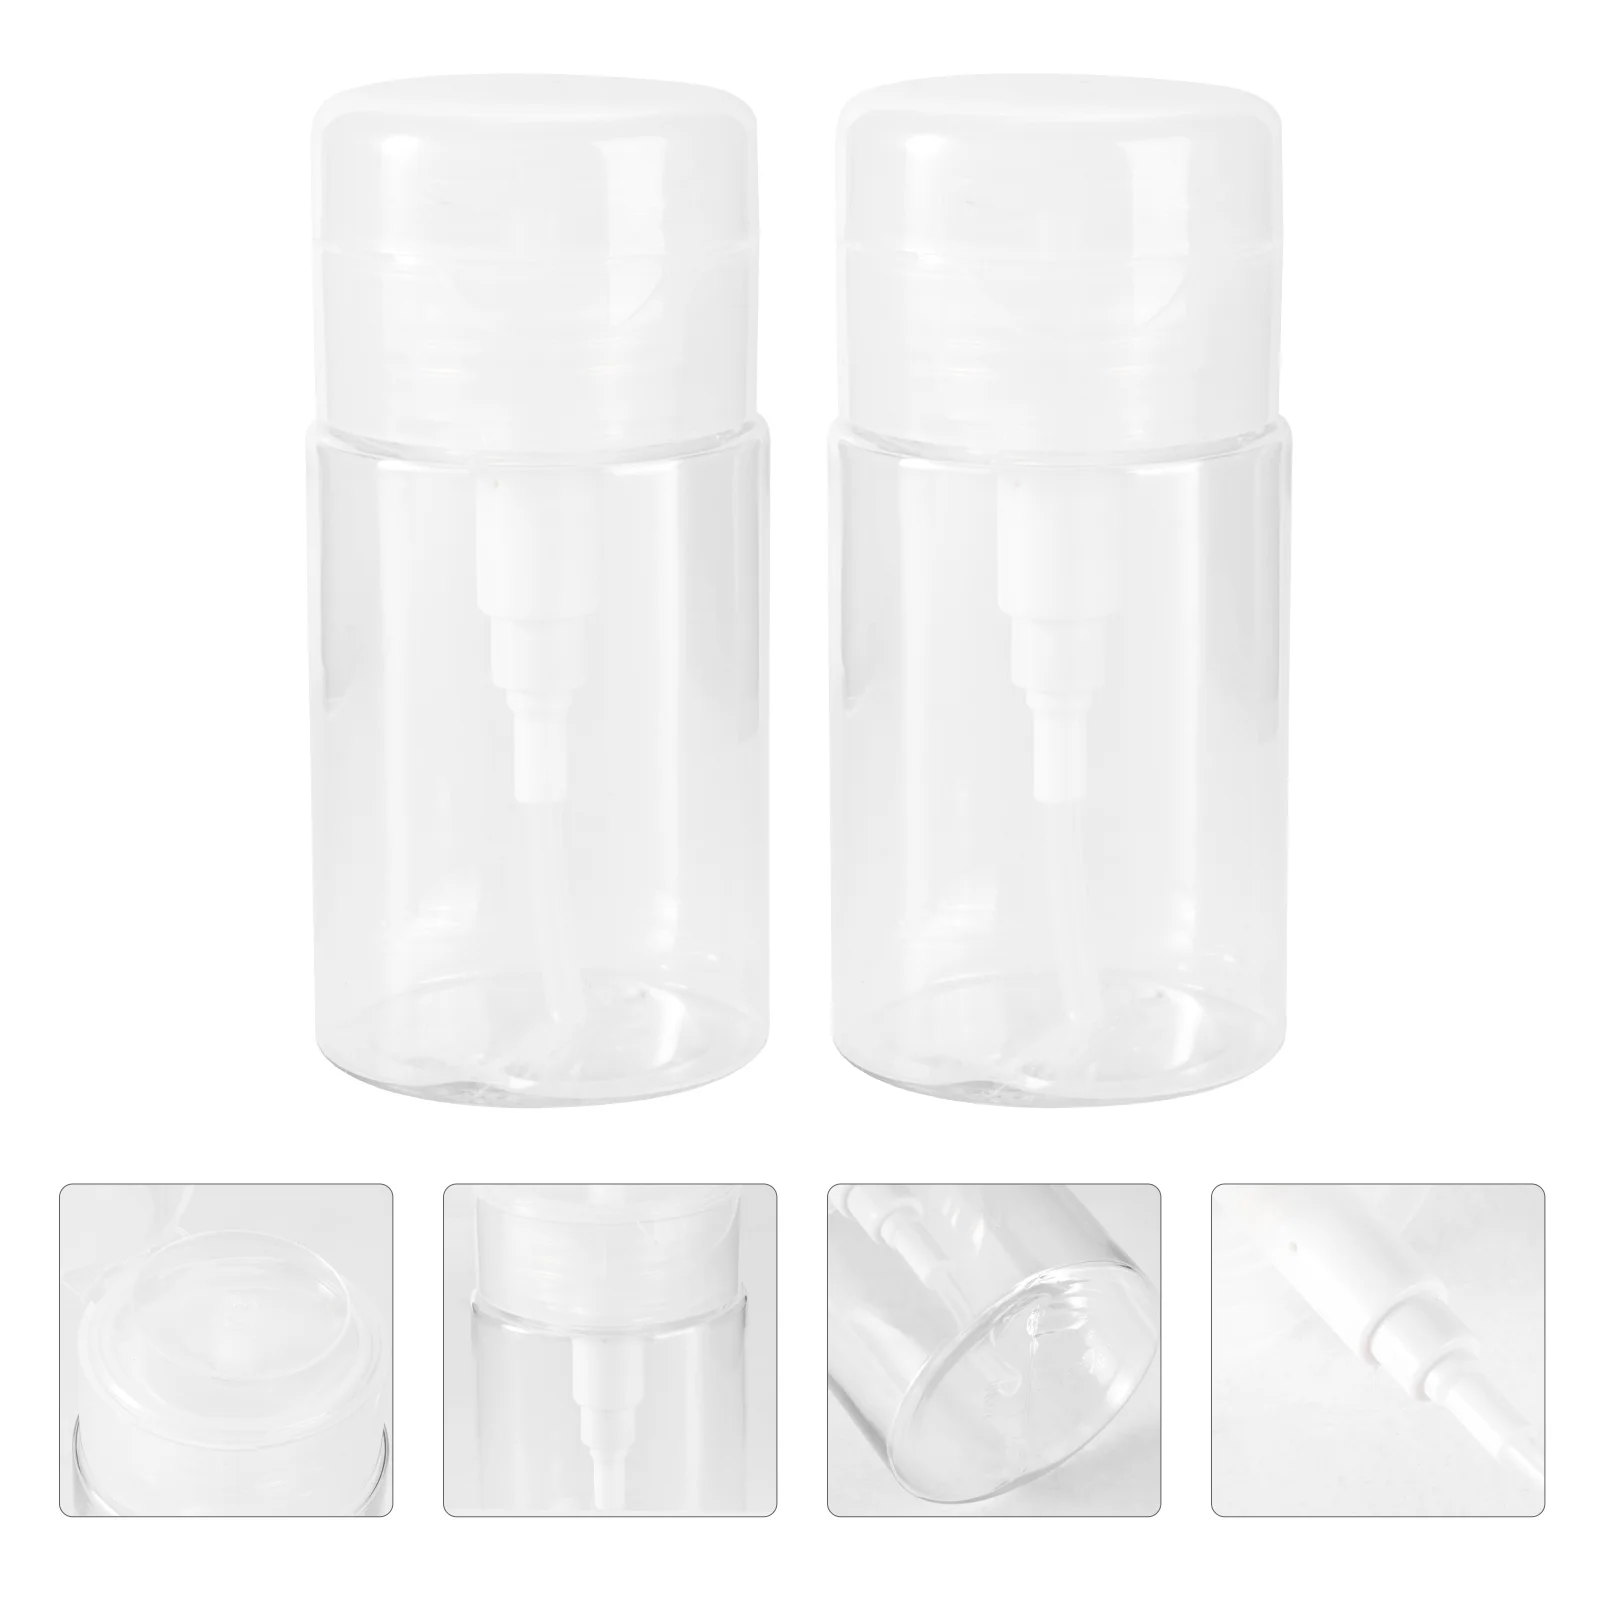 

2 Pcs Lotion Bottle Portable Travel Toner Liquid Pump Makeup Containers